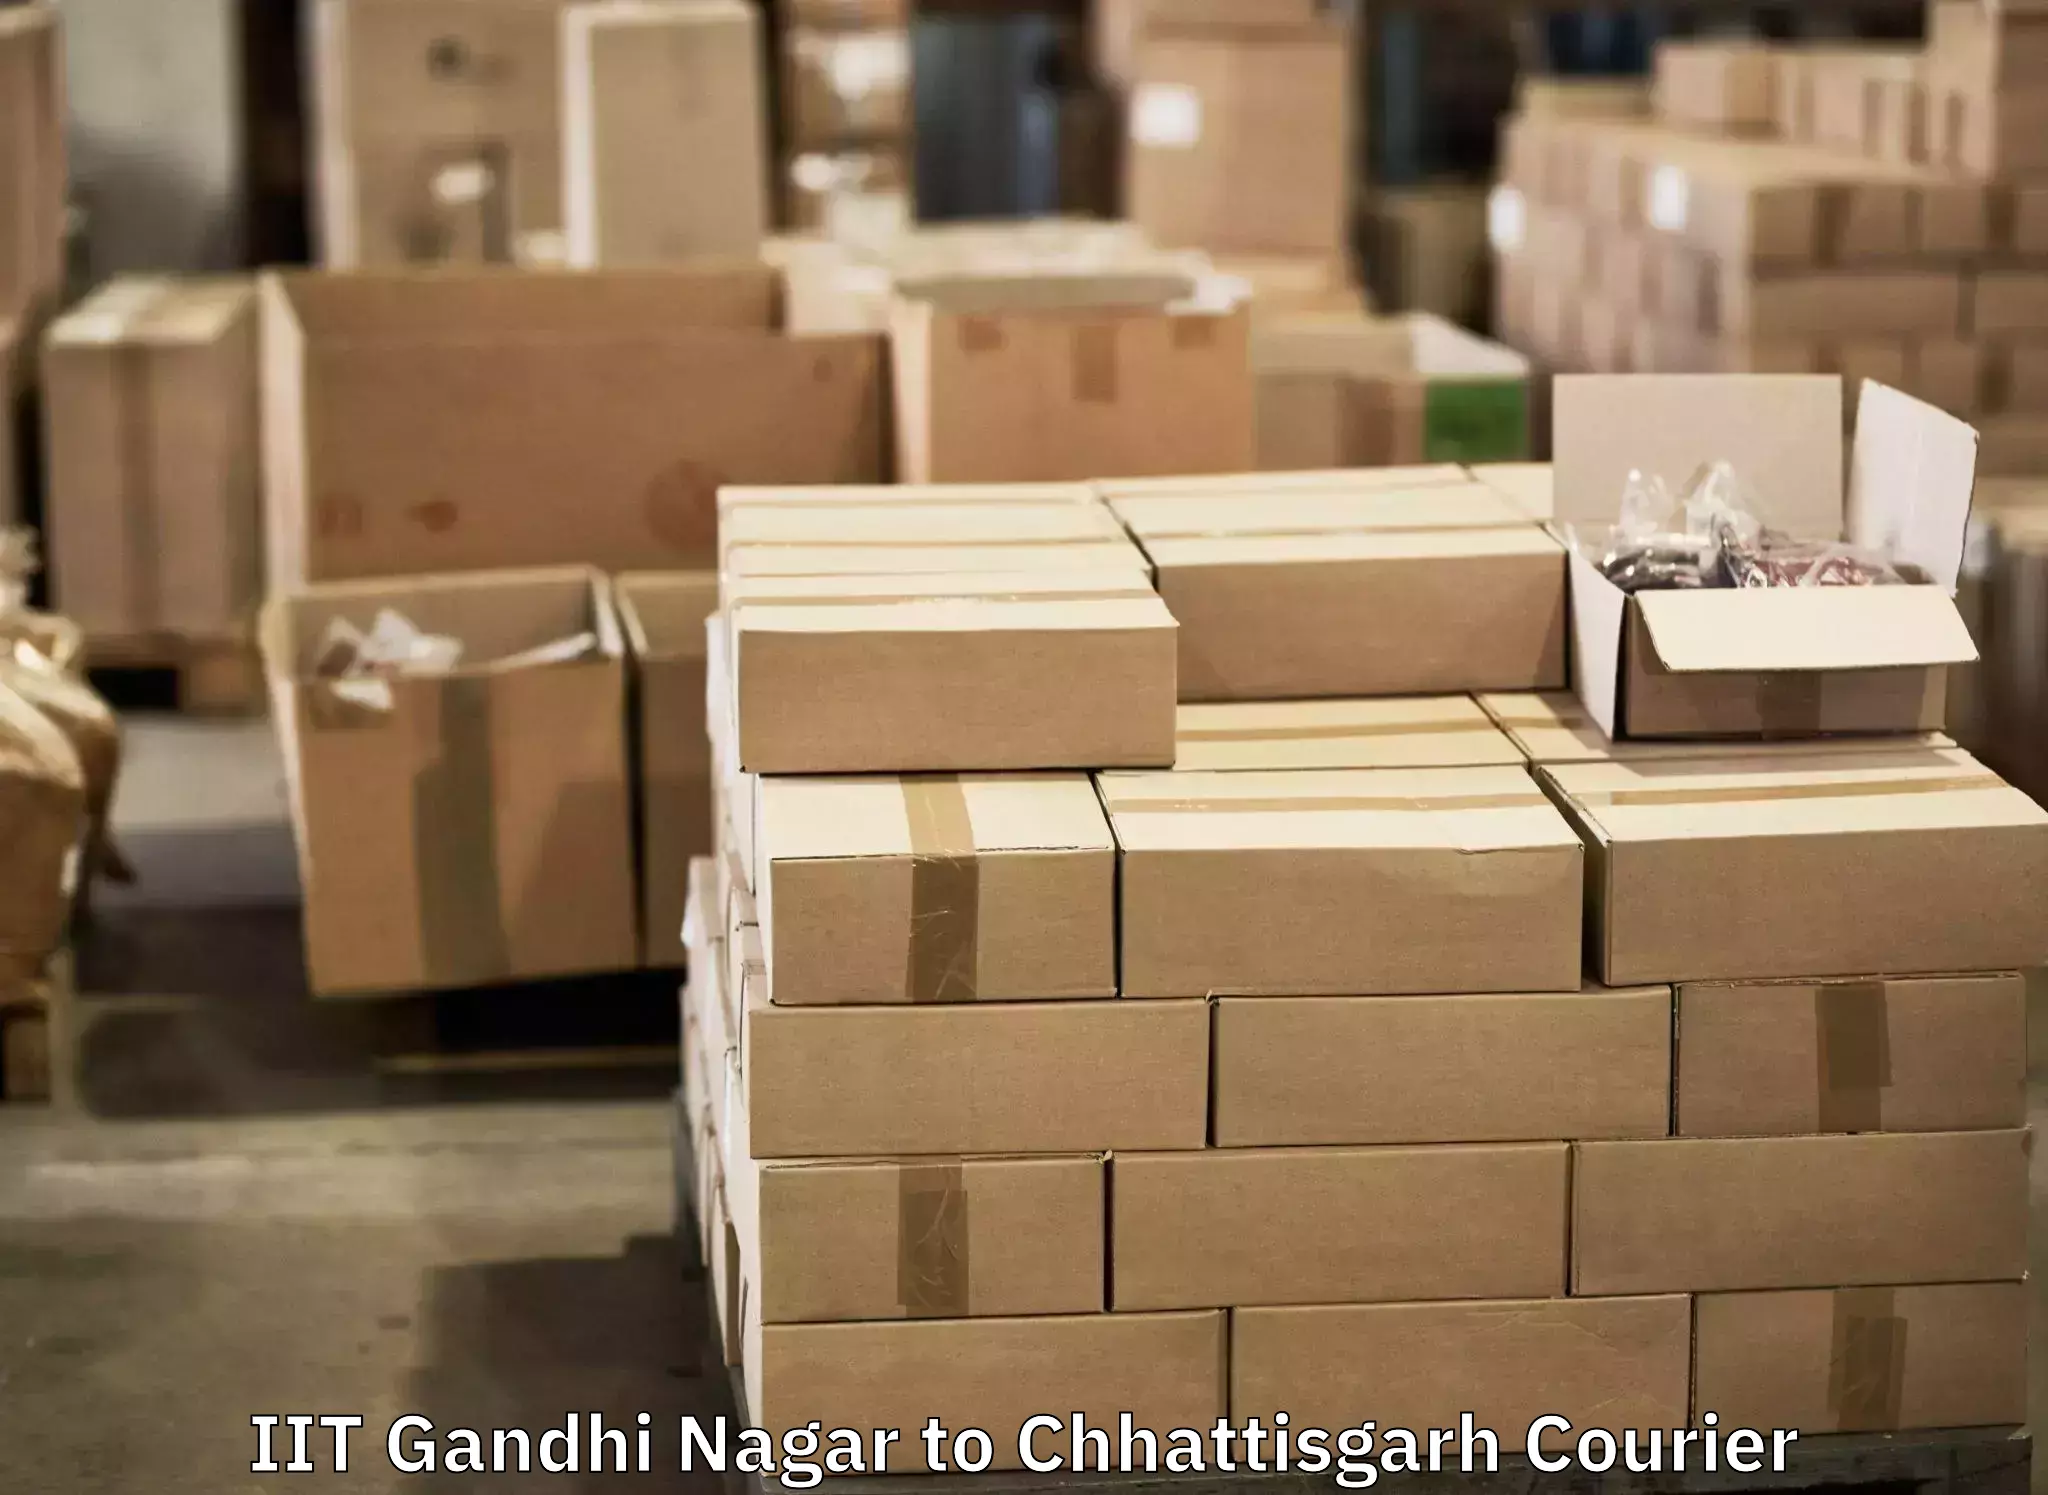 Luggage transport consultancy IIT Gandhi Nagar to Bemetara